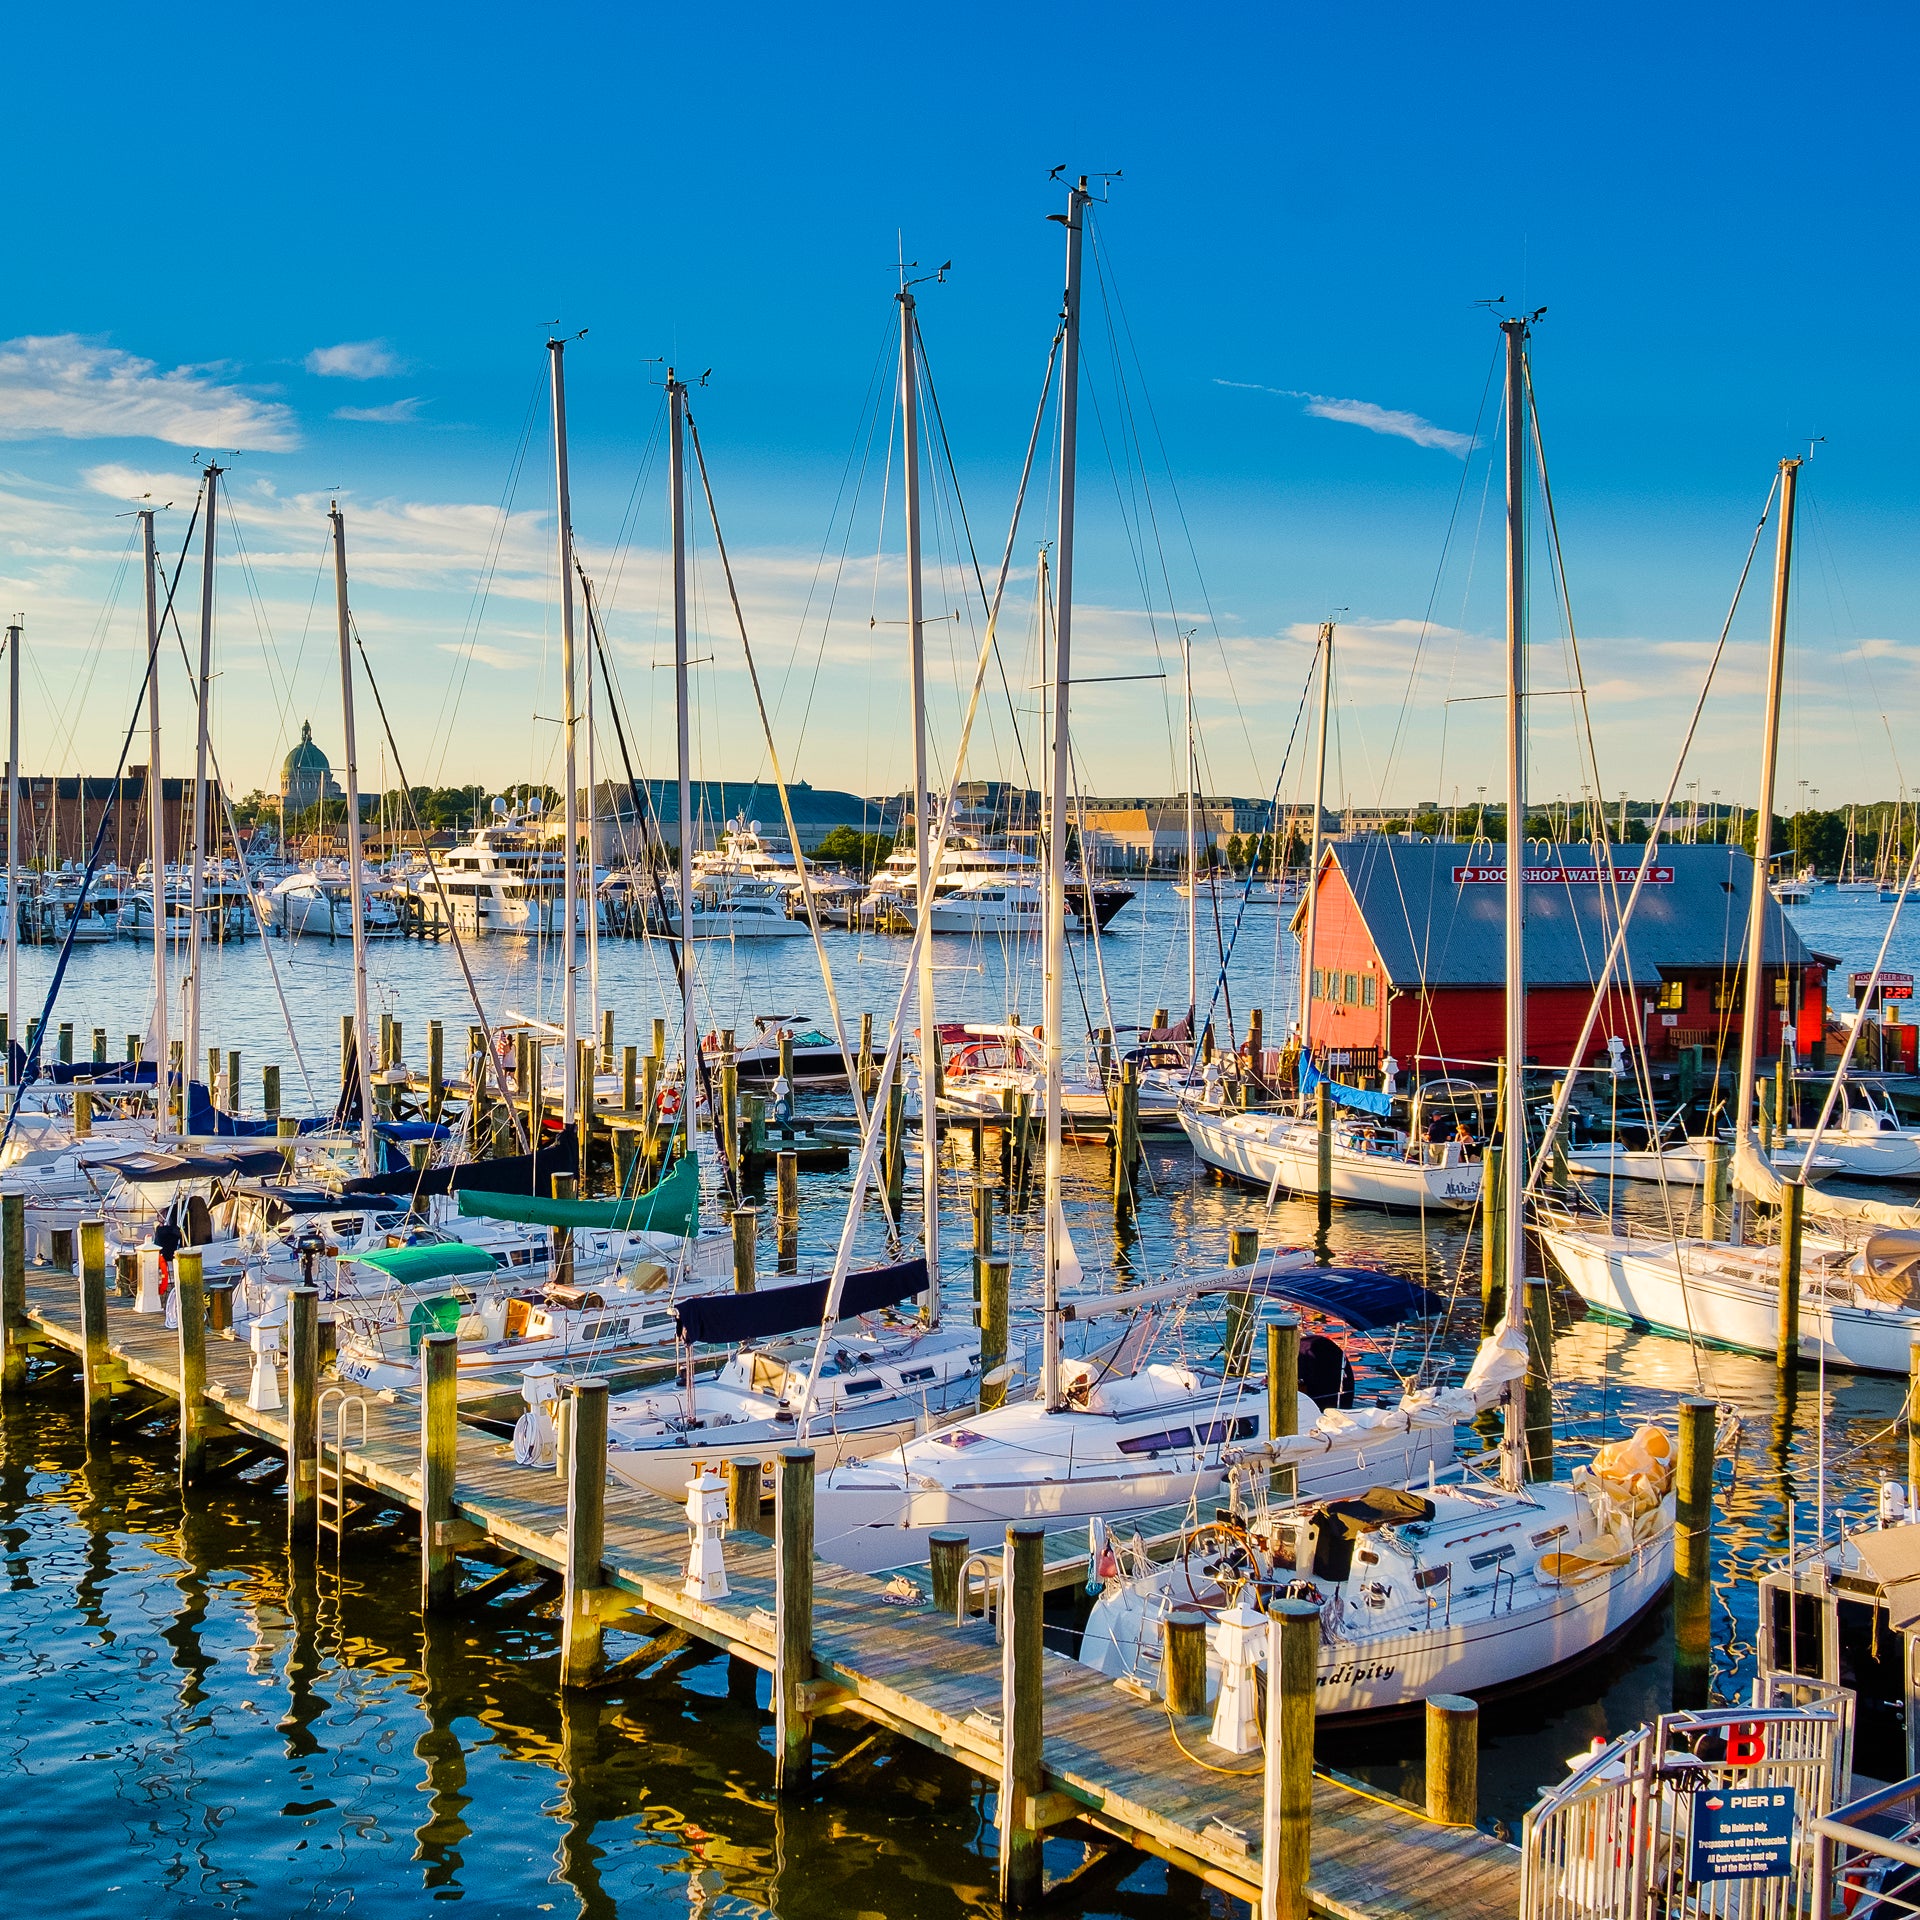 Hafen von Annapolis mit Yachtcharter